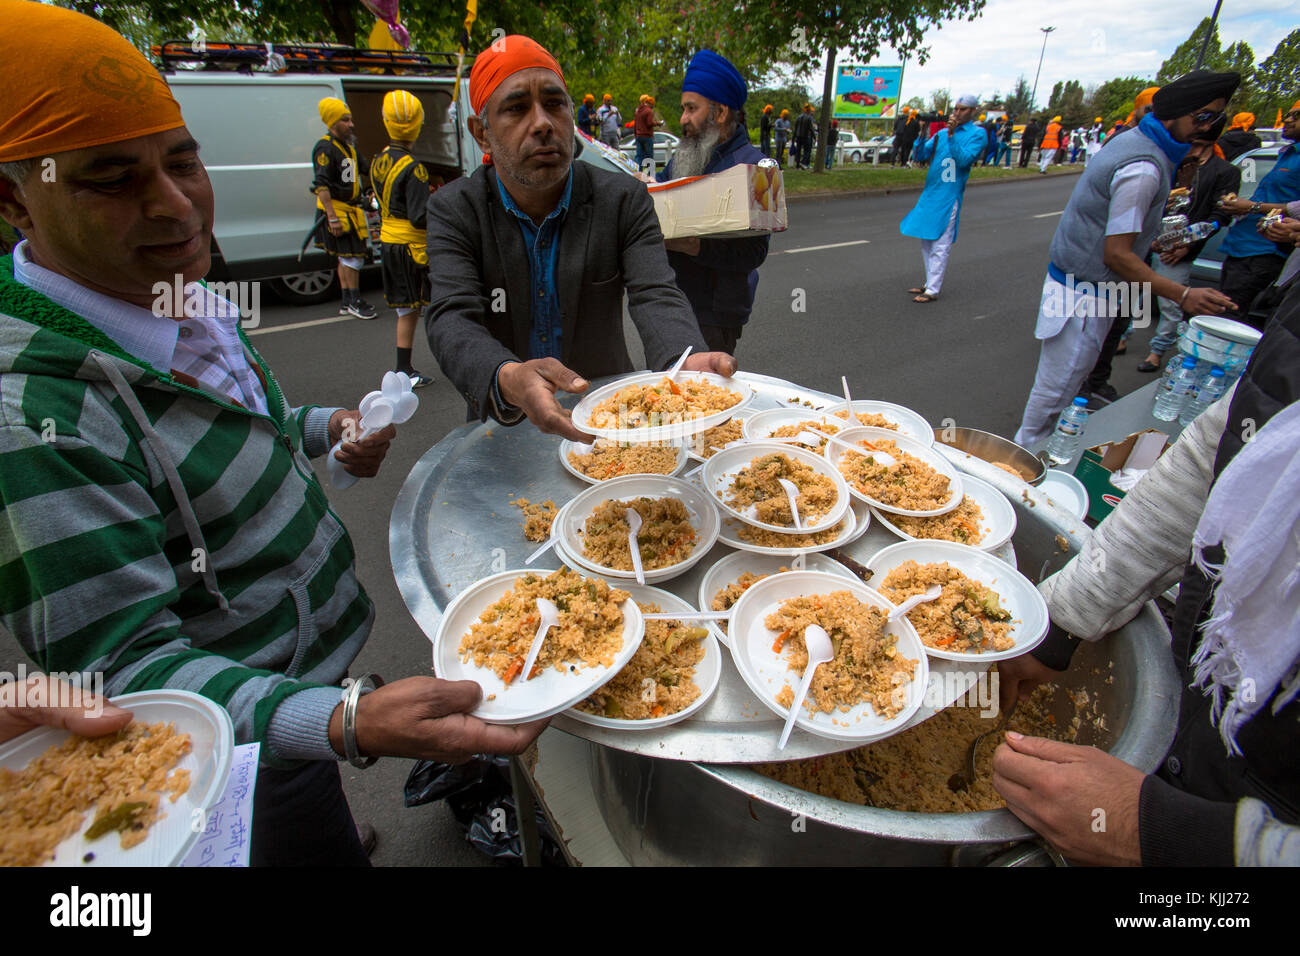 Les Sikhs célébrer Vaisakhi festival à Bobigny, France. La distribution gratuite de vivres. Banque D'Images